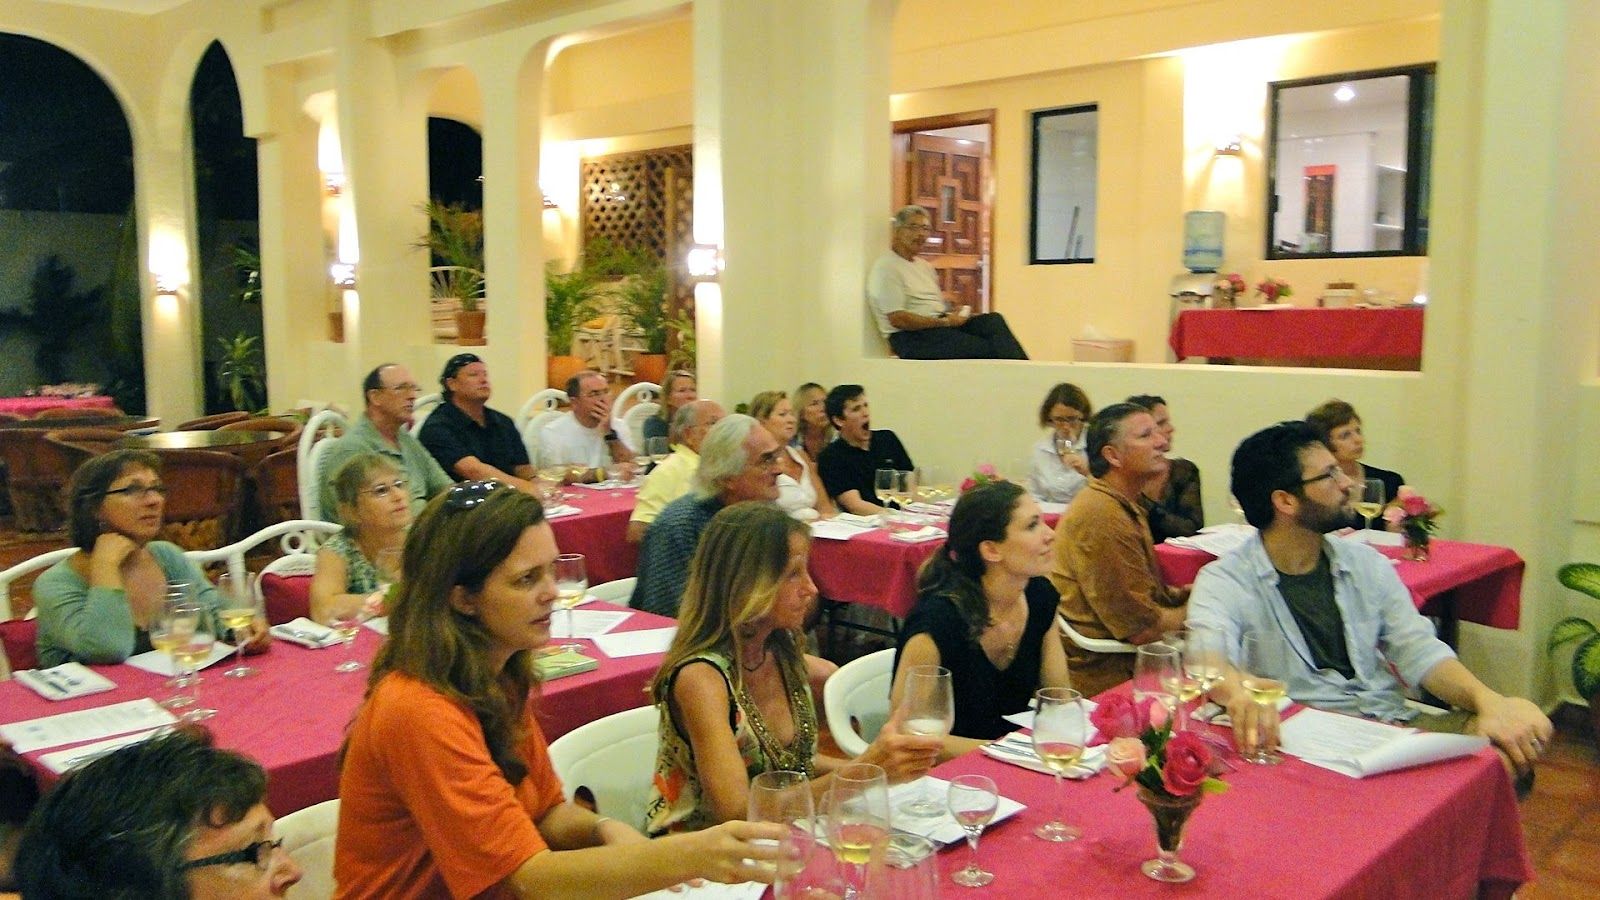 Food and wine Pairing Series at Casa Caribe